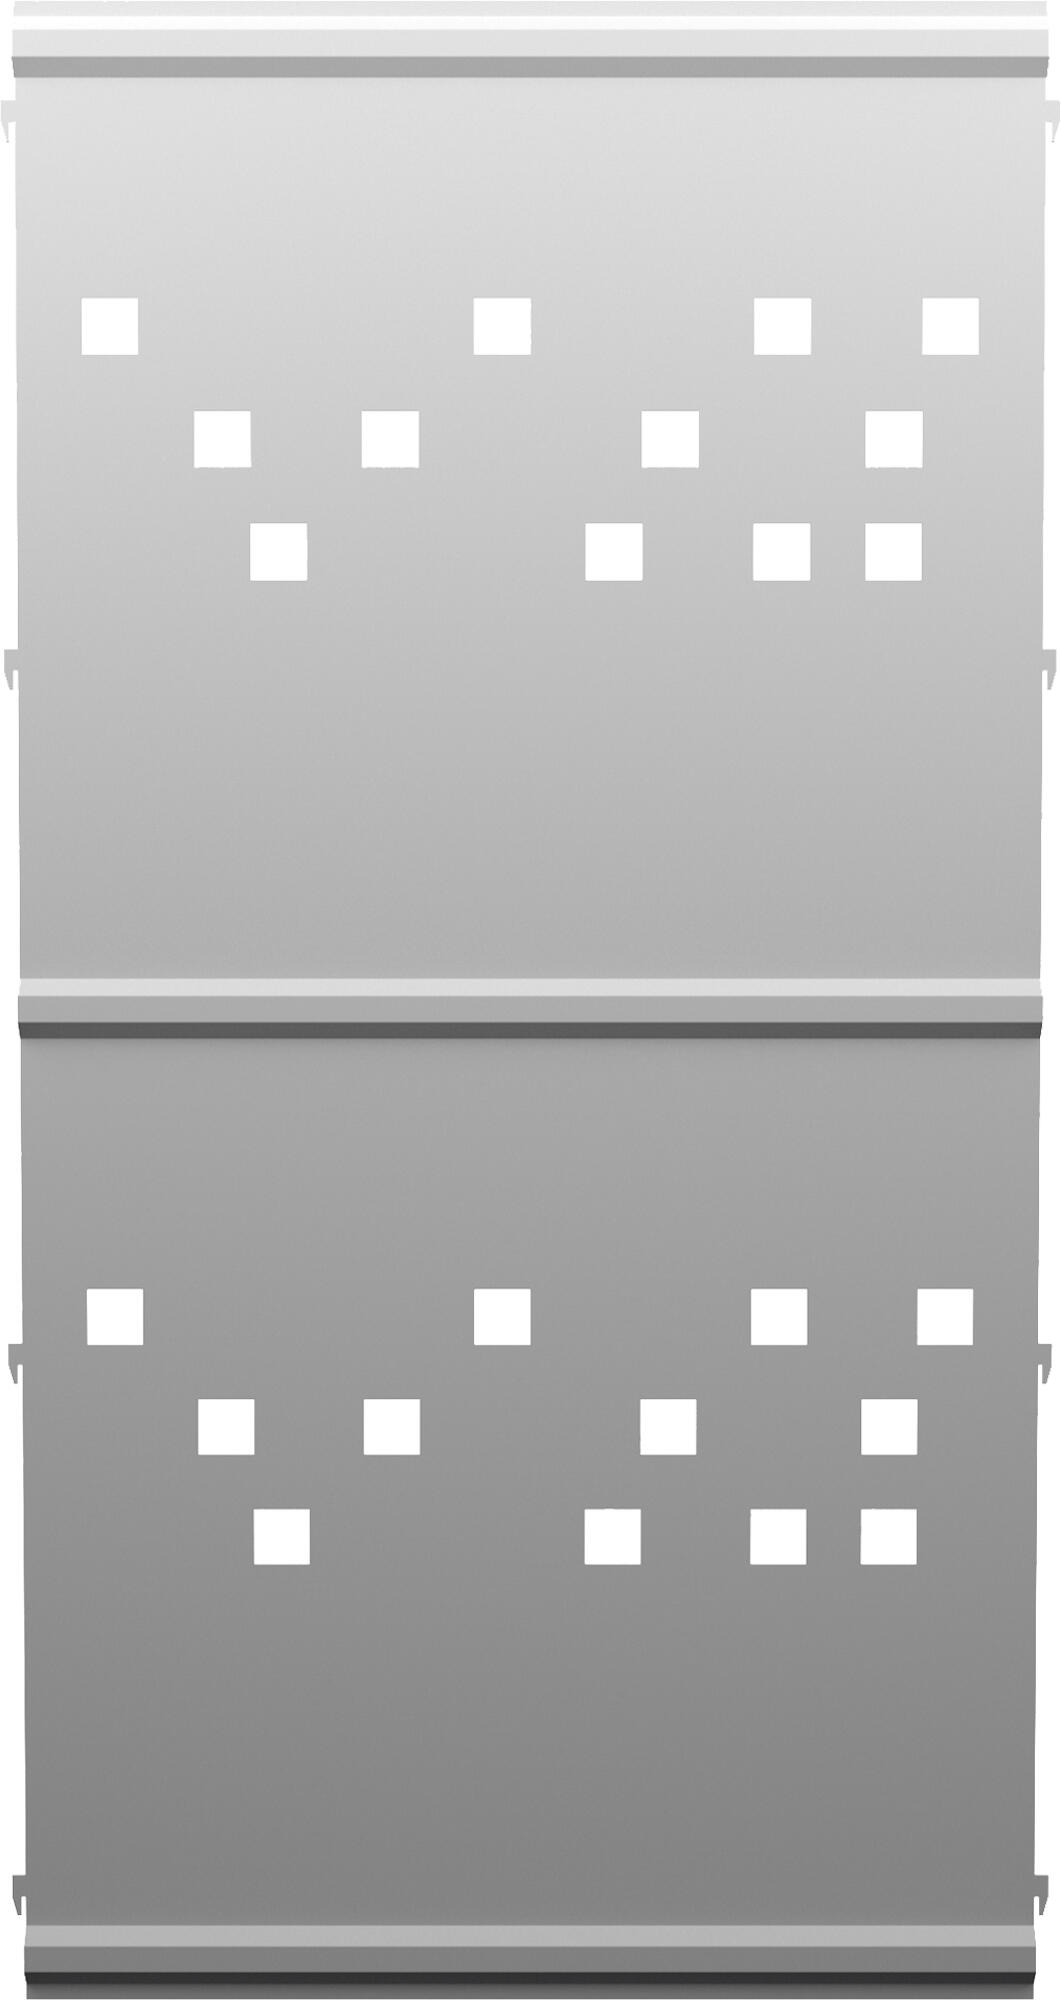 Panel remate valla acero galvanizado franja cuadros blanco 144x73,5 cm